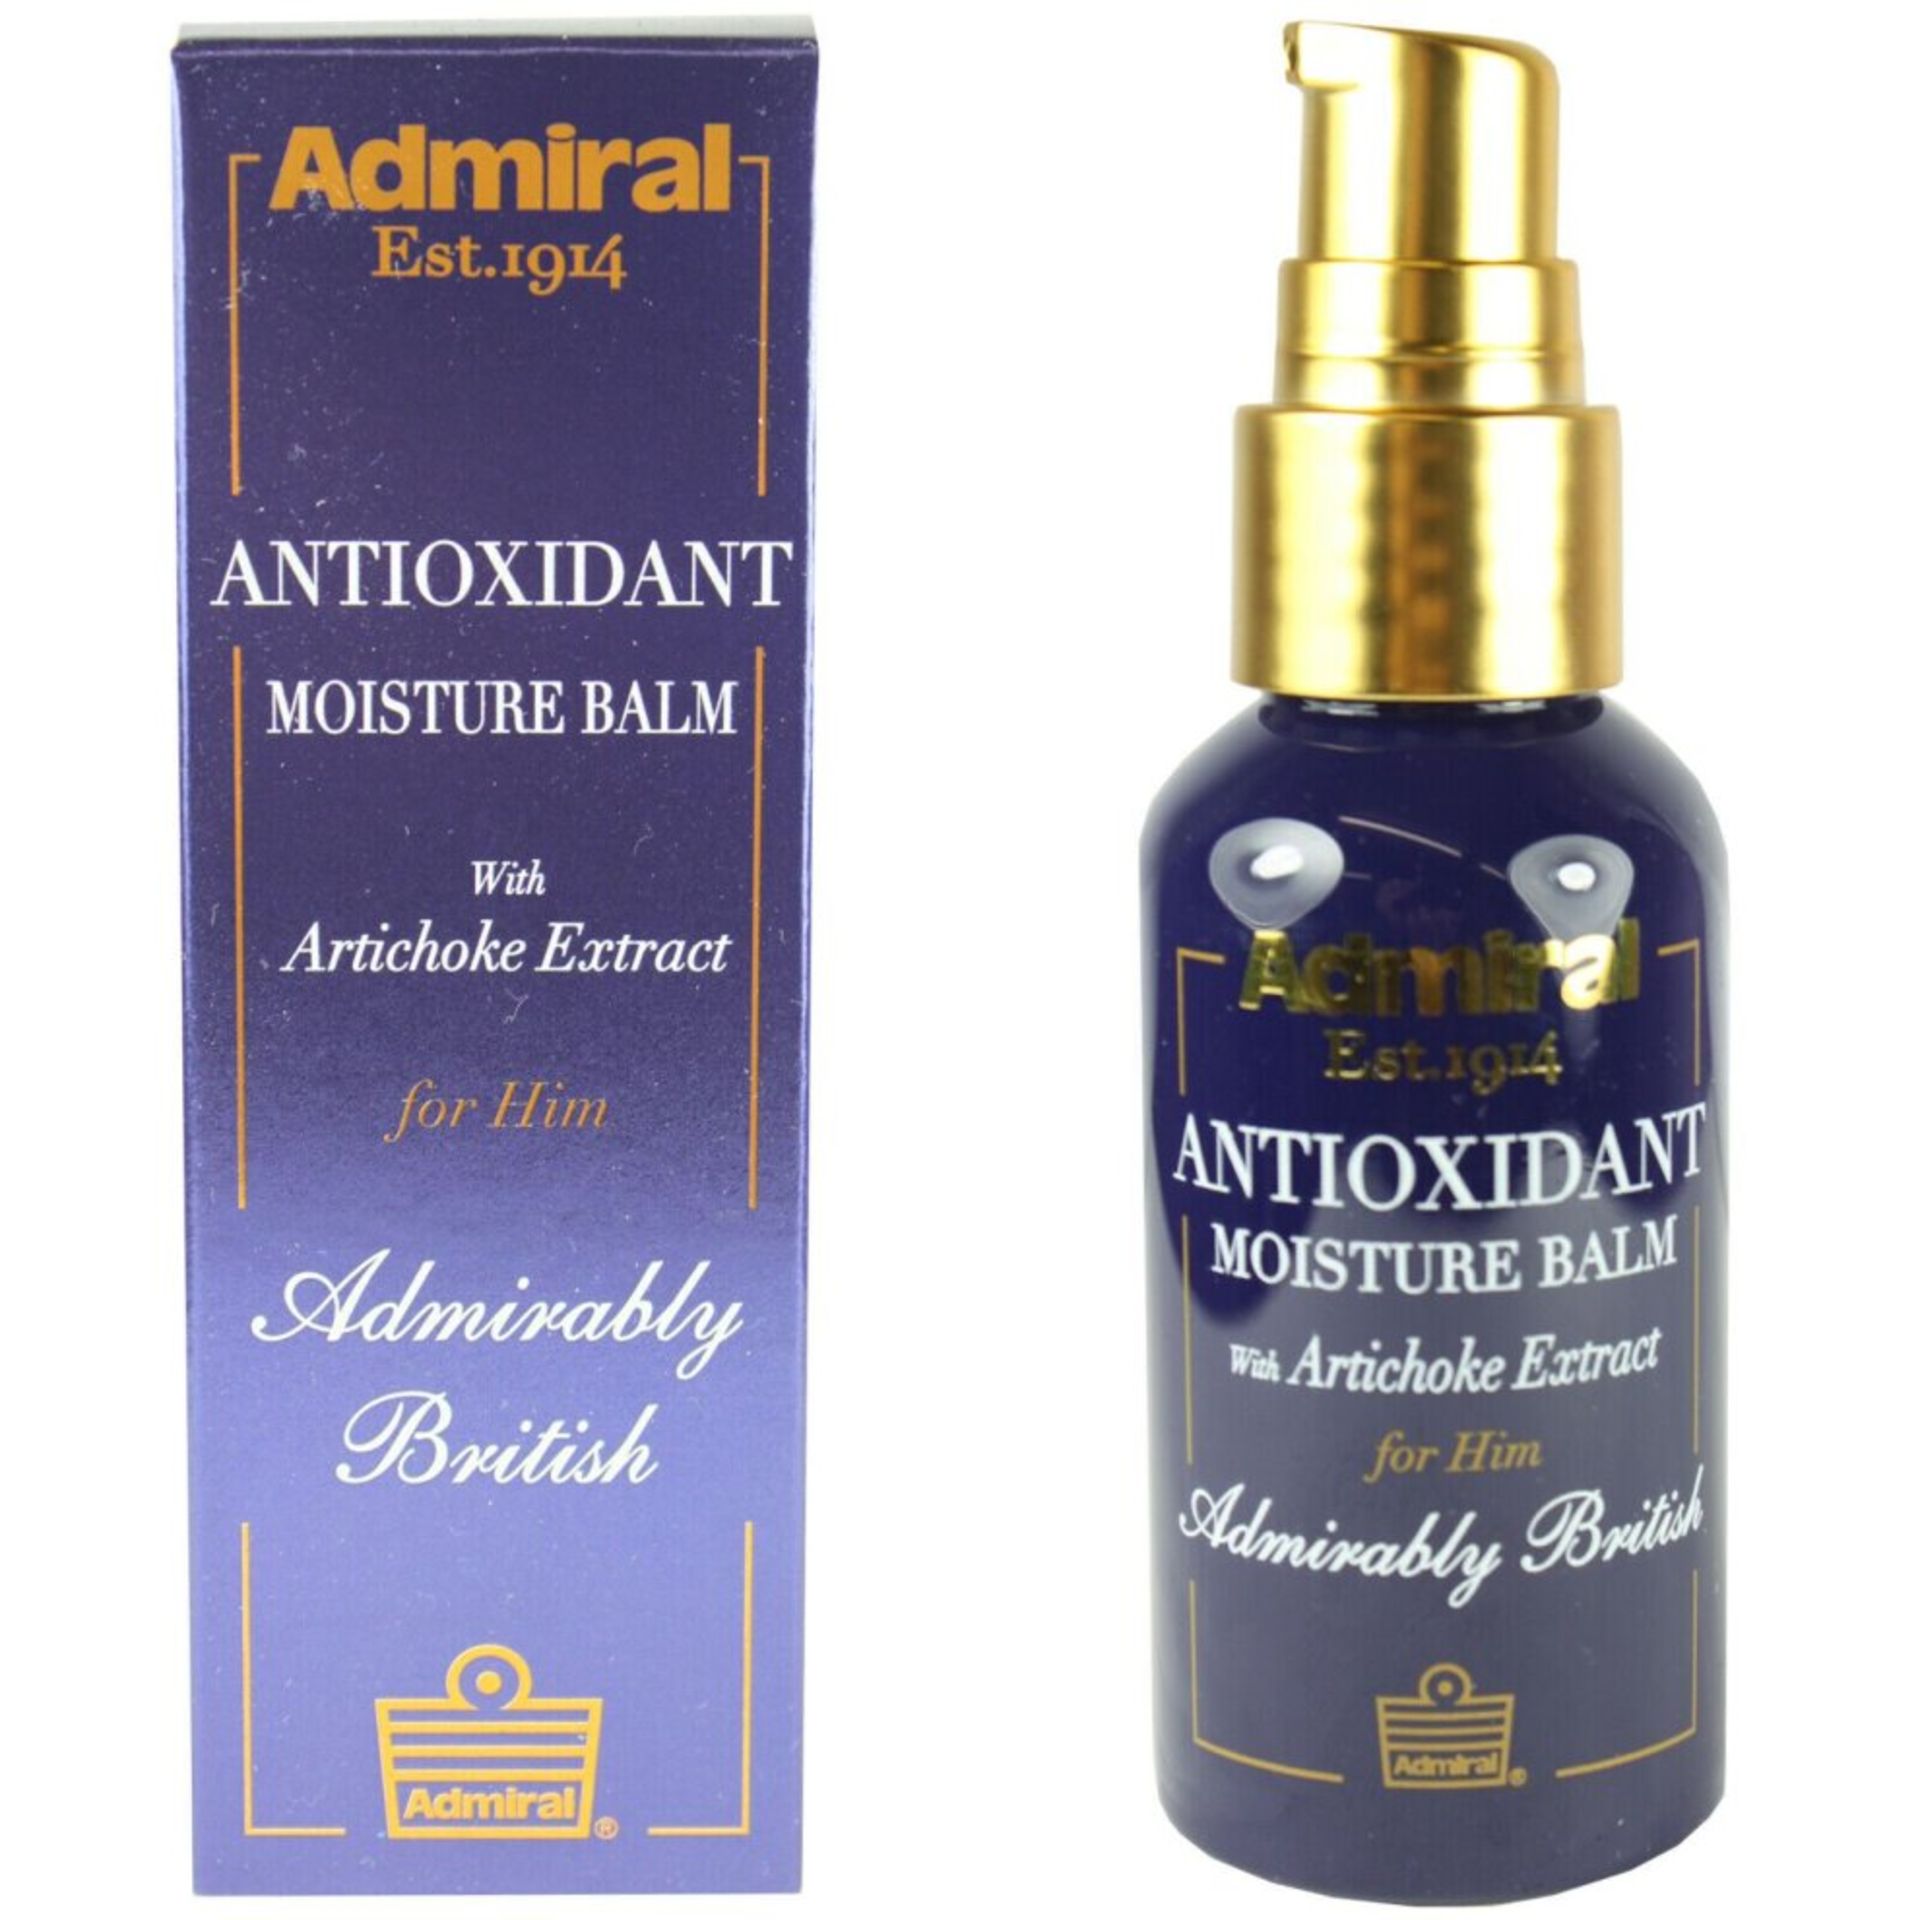 6 x Cougar/Admiral Antioxidant Moisturiser 50ml RRP £10.99 ea